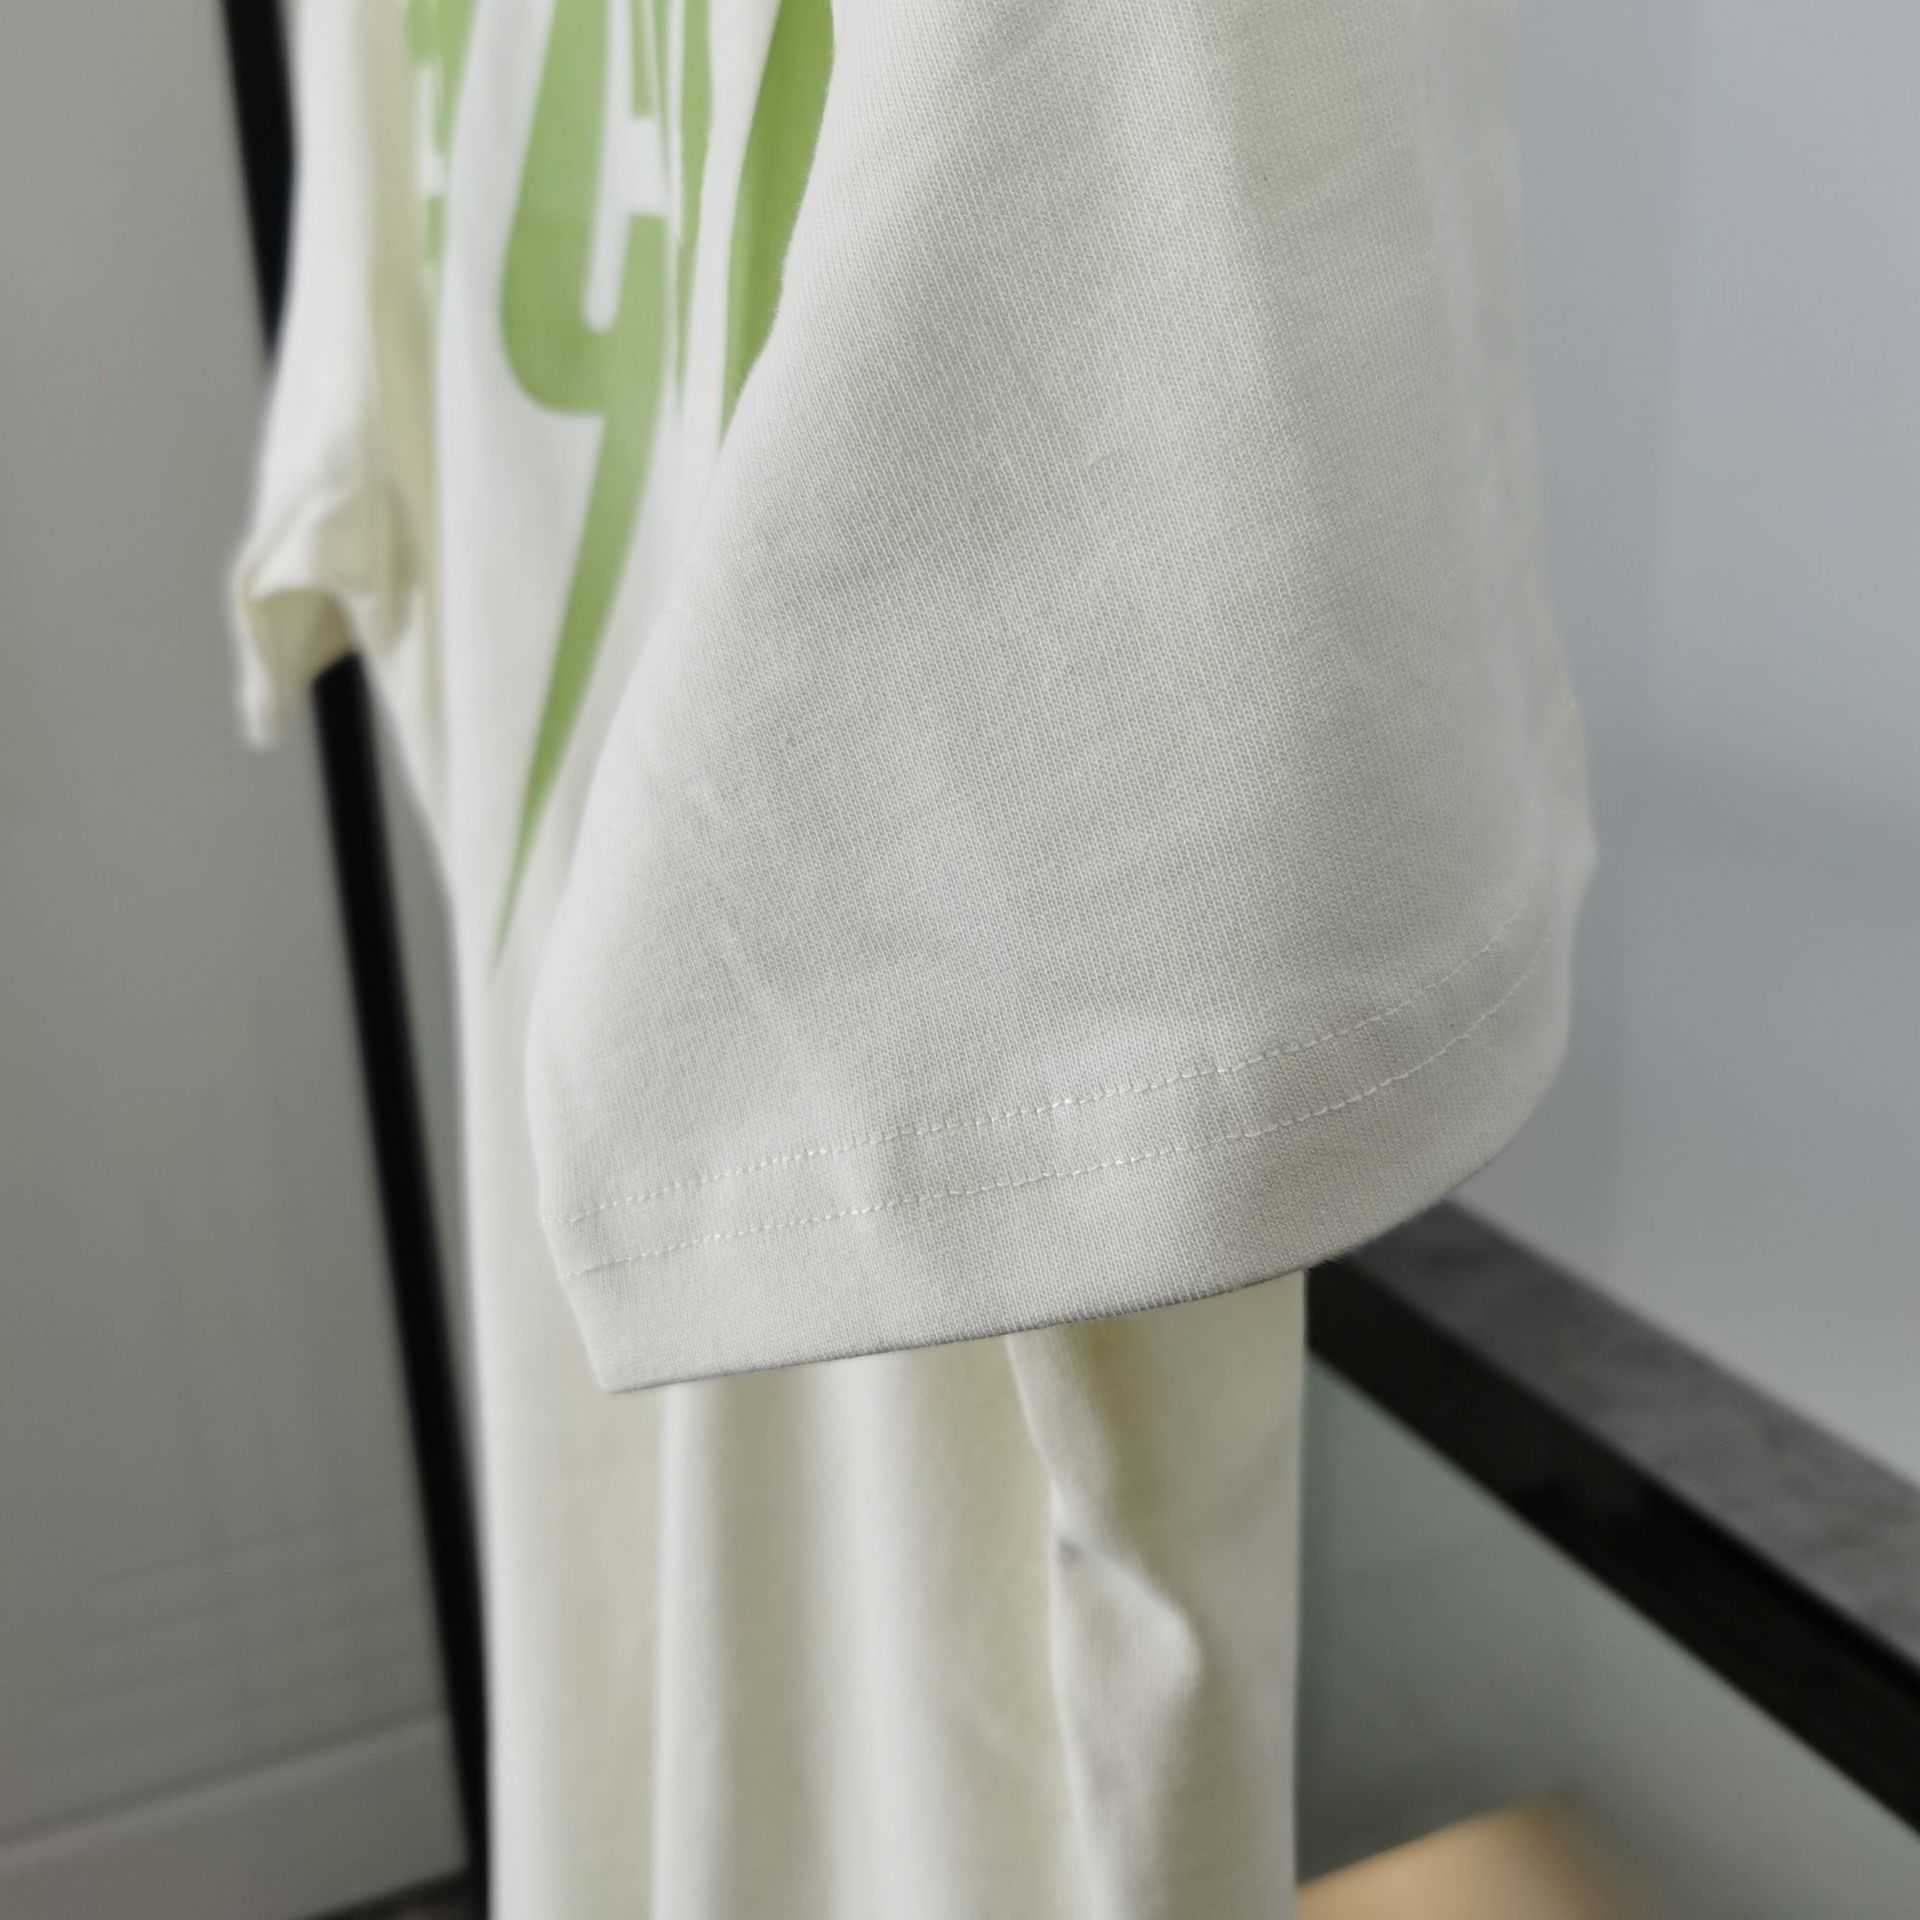 Lüks Tasarımcının Yeni Erkek ve Kadınlar Kısa Kollu Spor Giyim Seti Gömlek Kendi Kendine Tasarlanmış Yaz Yeşil Şimşek Bıçağı Baskı Çift Kısa Kollu T-Shirt Gevşek Fit